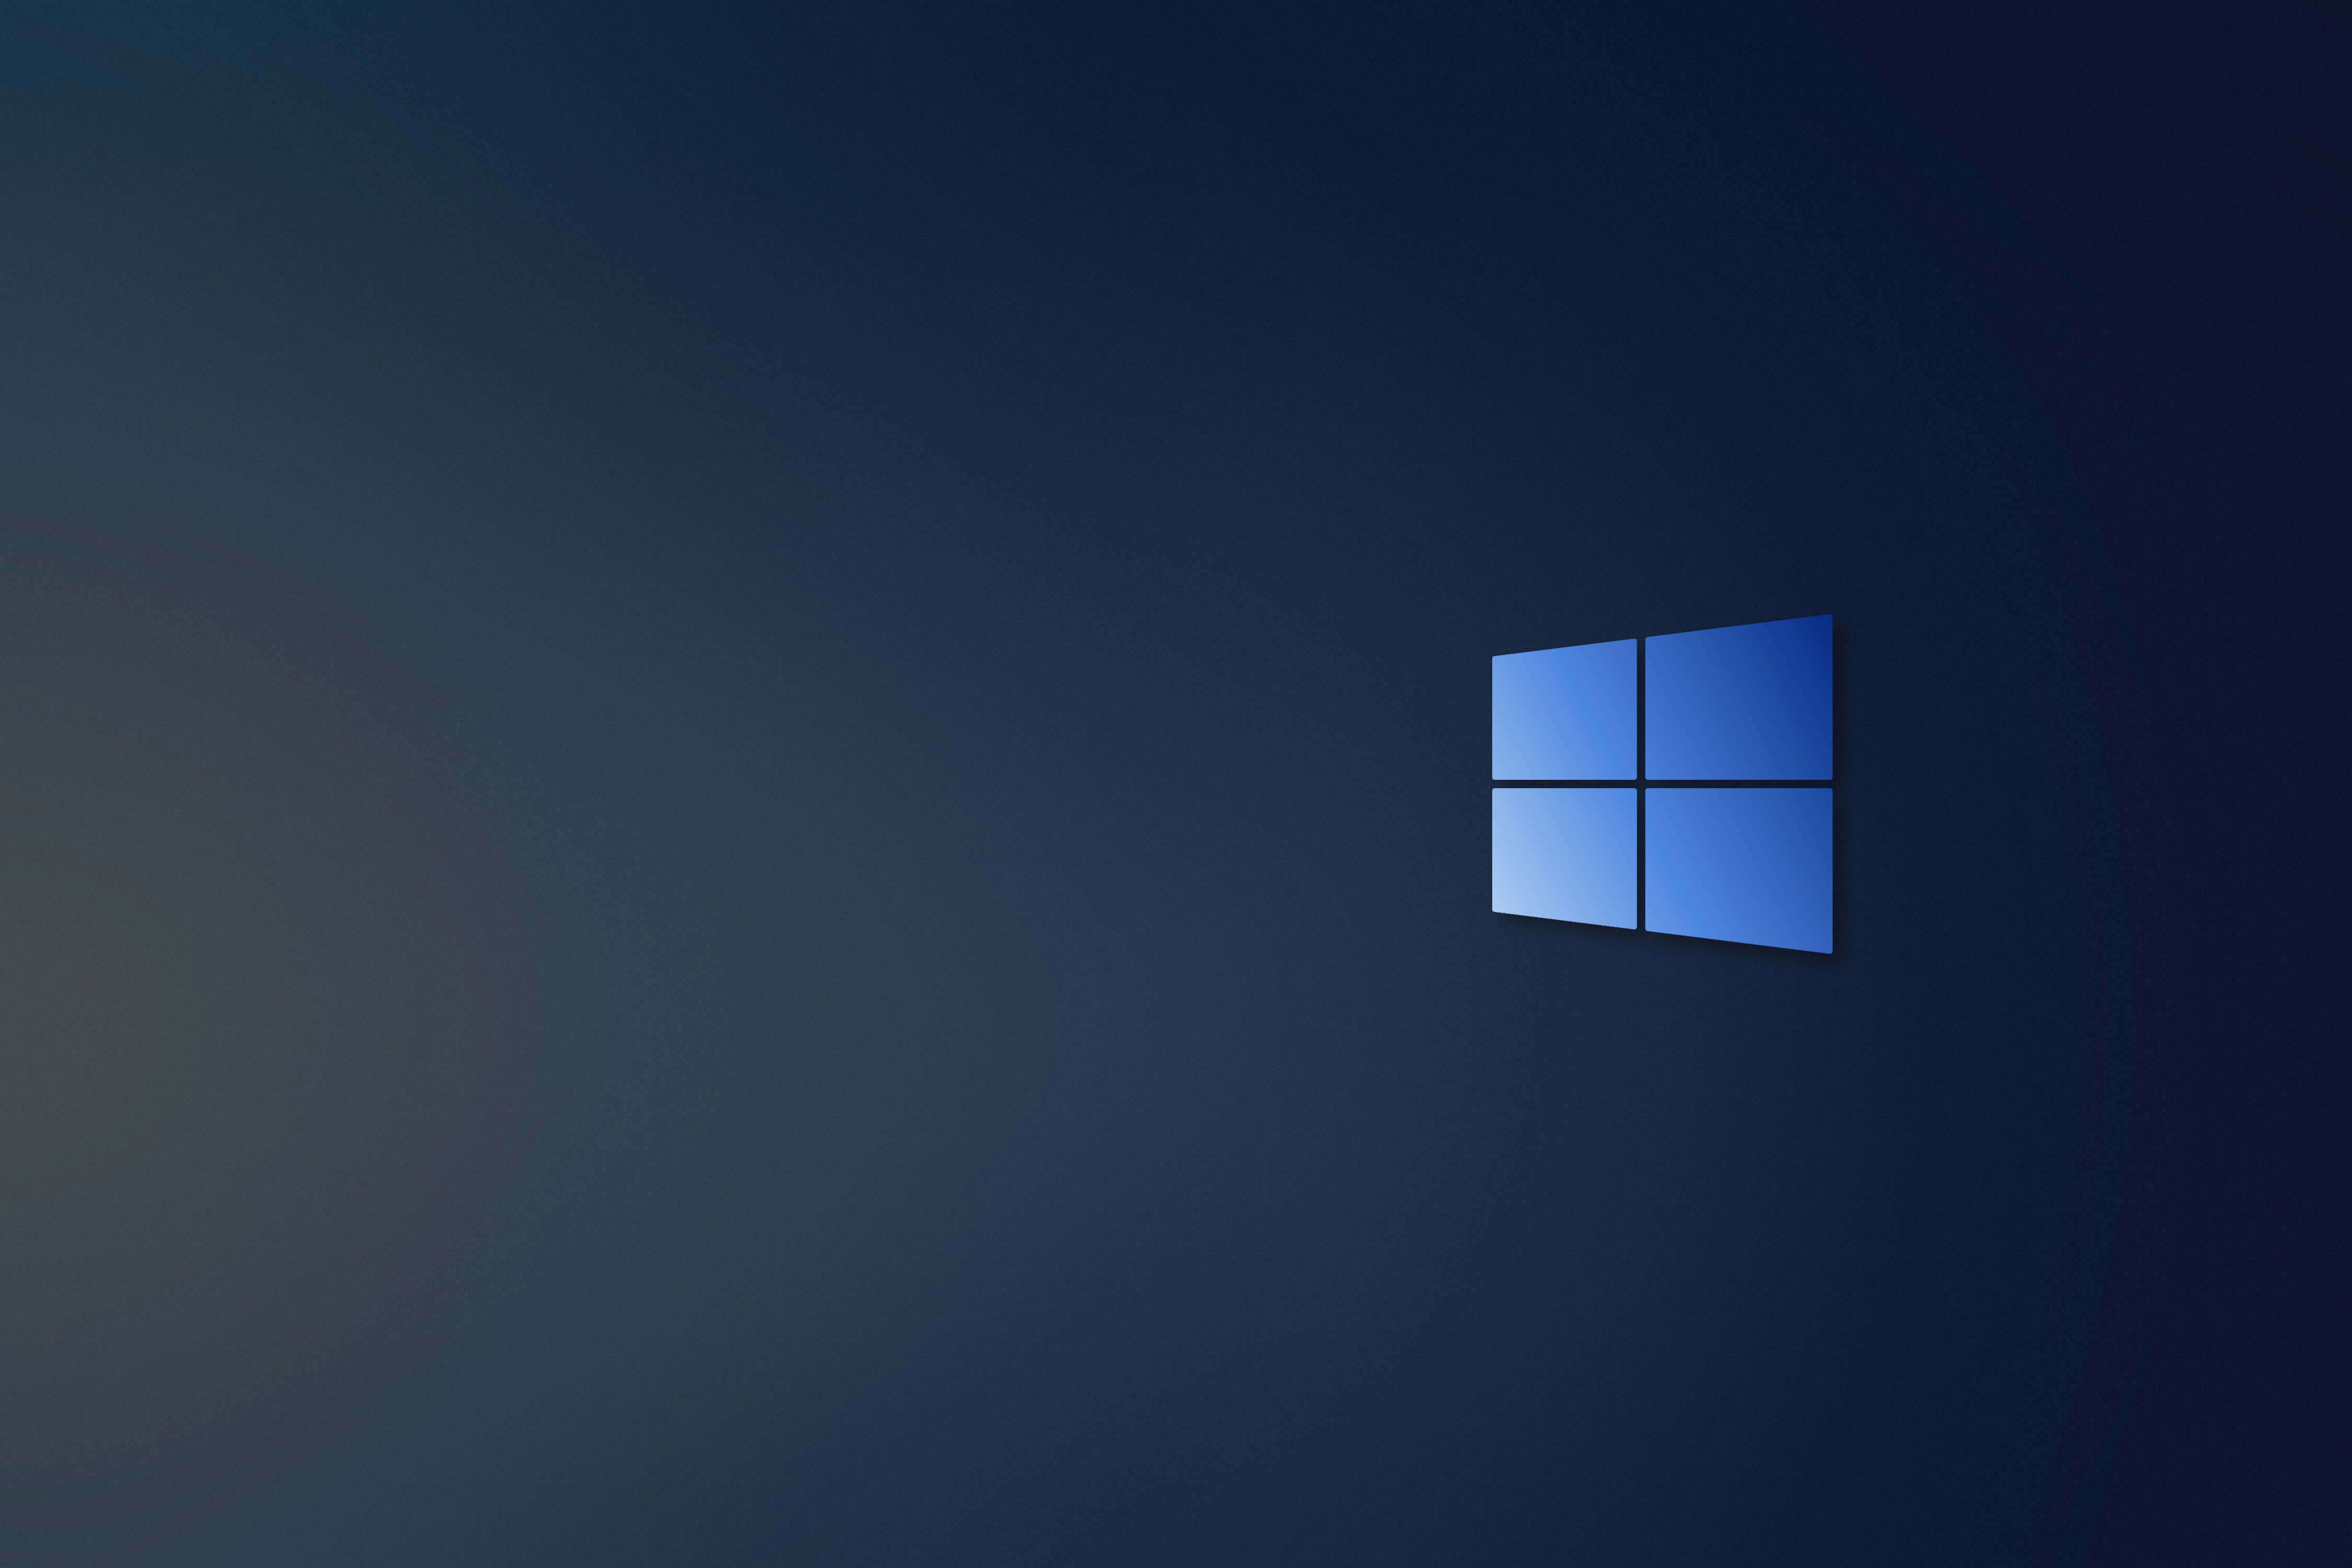 Download hình nền Windows 10 chất lượng Full HD 4k siêu đẹp